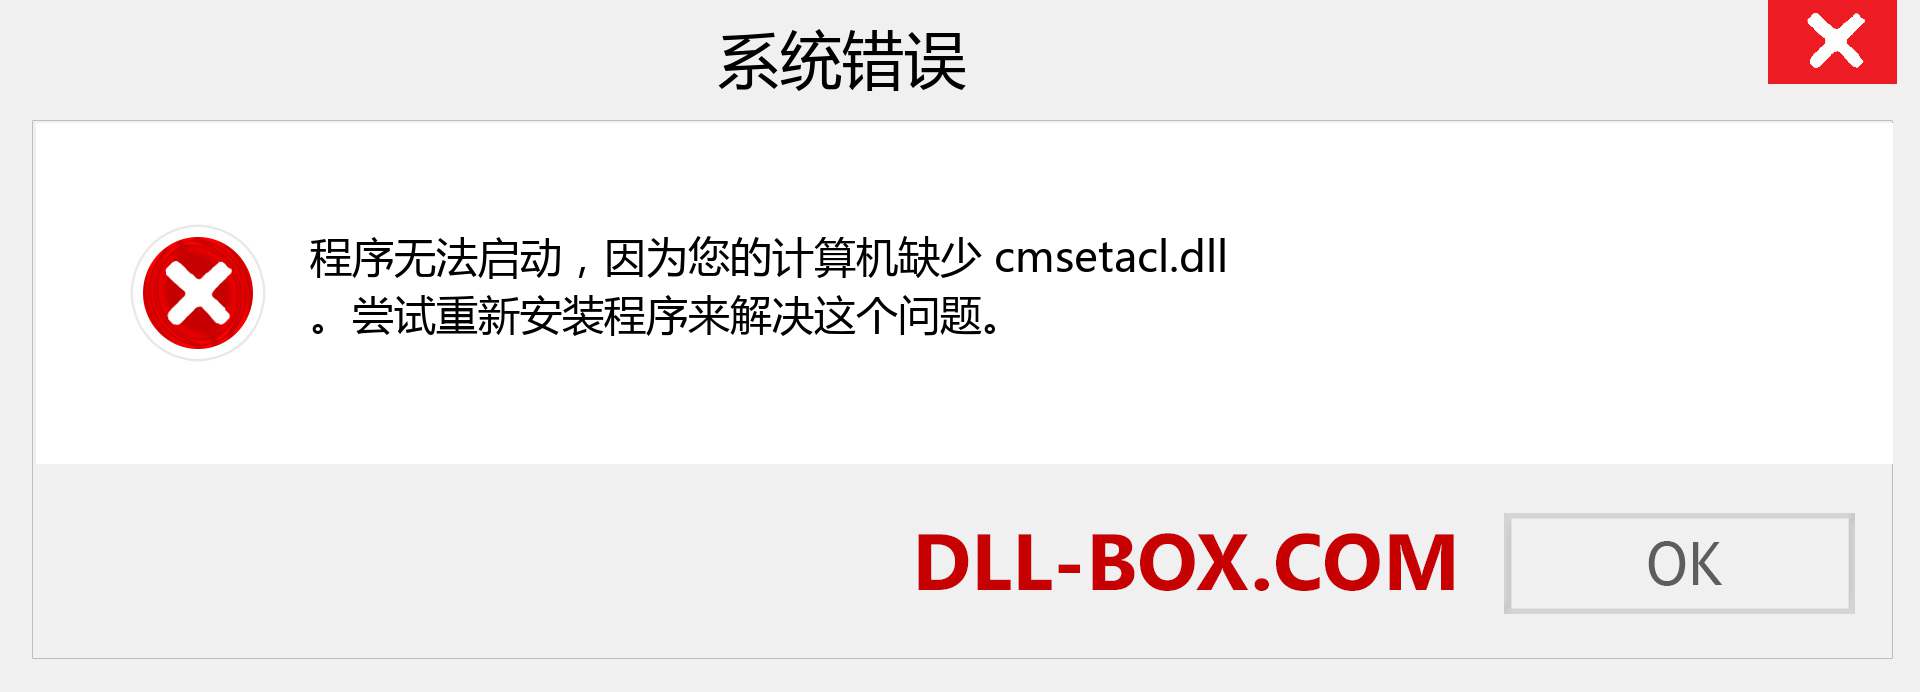 cmsetacl.dll 文件丢失？。 适用于 Windows 7、8、10 的下载 - 修复 Windows、照片、图像上的 cmsetacl dll 丢失错误